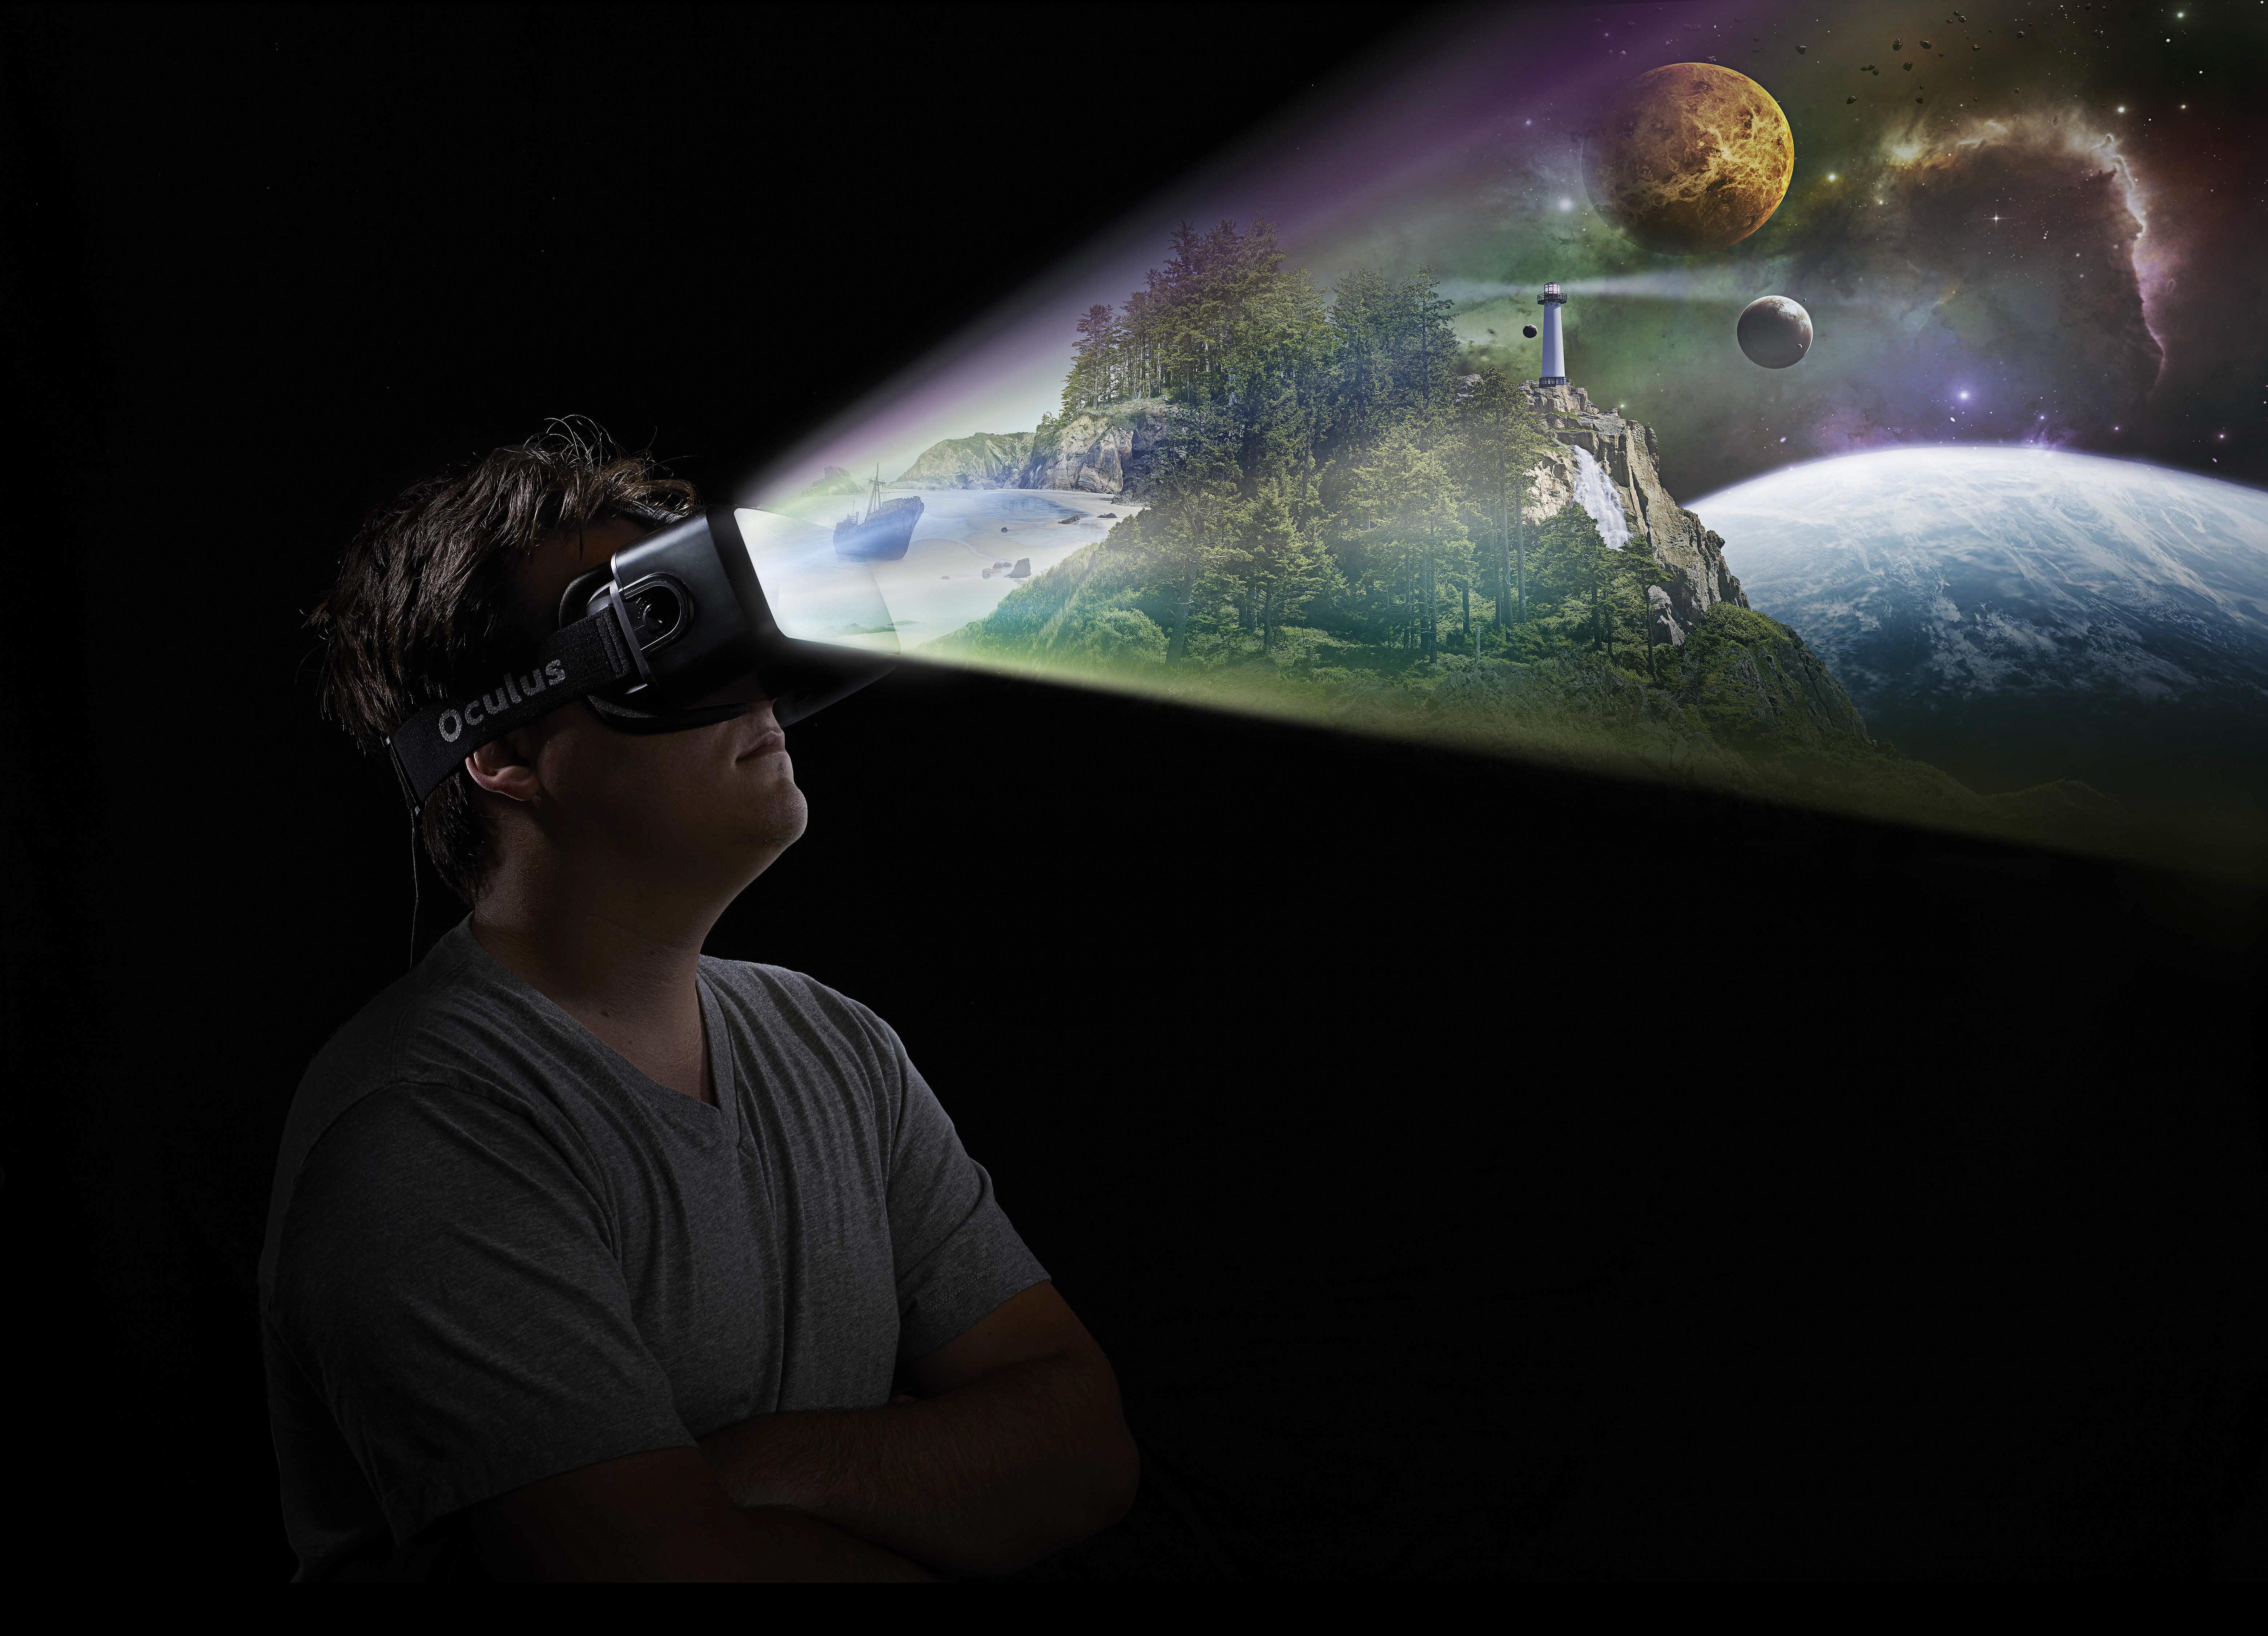 Мечта в игре становится реальностью 47. Очки виртуальной реальности. Виртуальная реальность в жизни человека. Астрономия виртуальная реальность. Виртуальность и реальность.